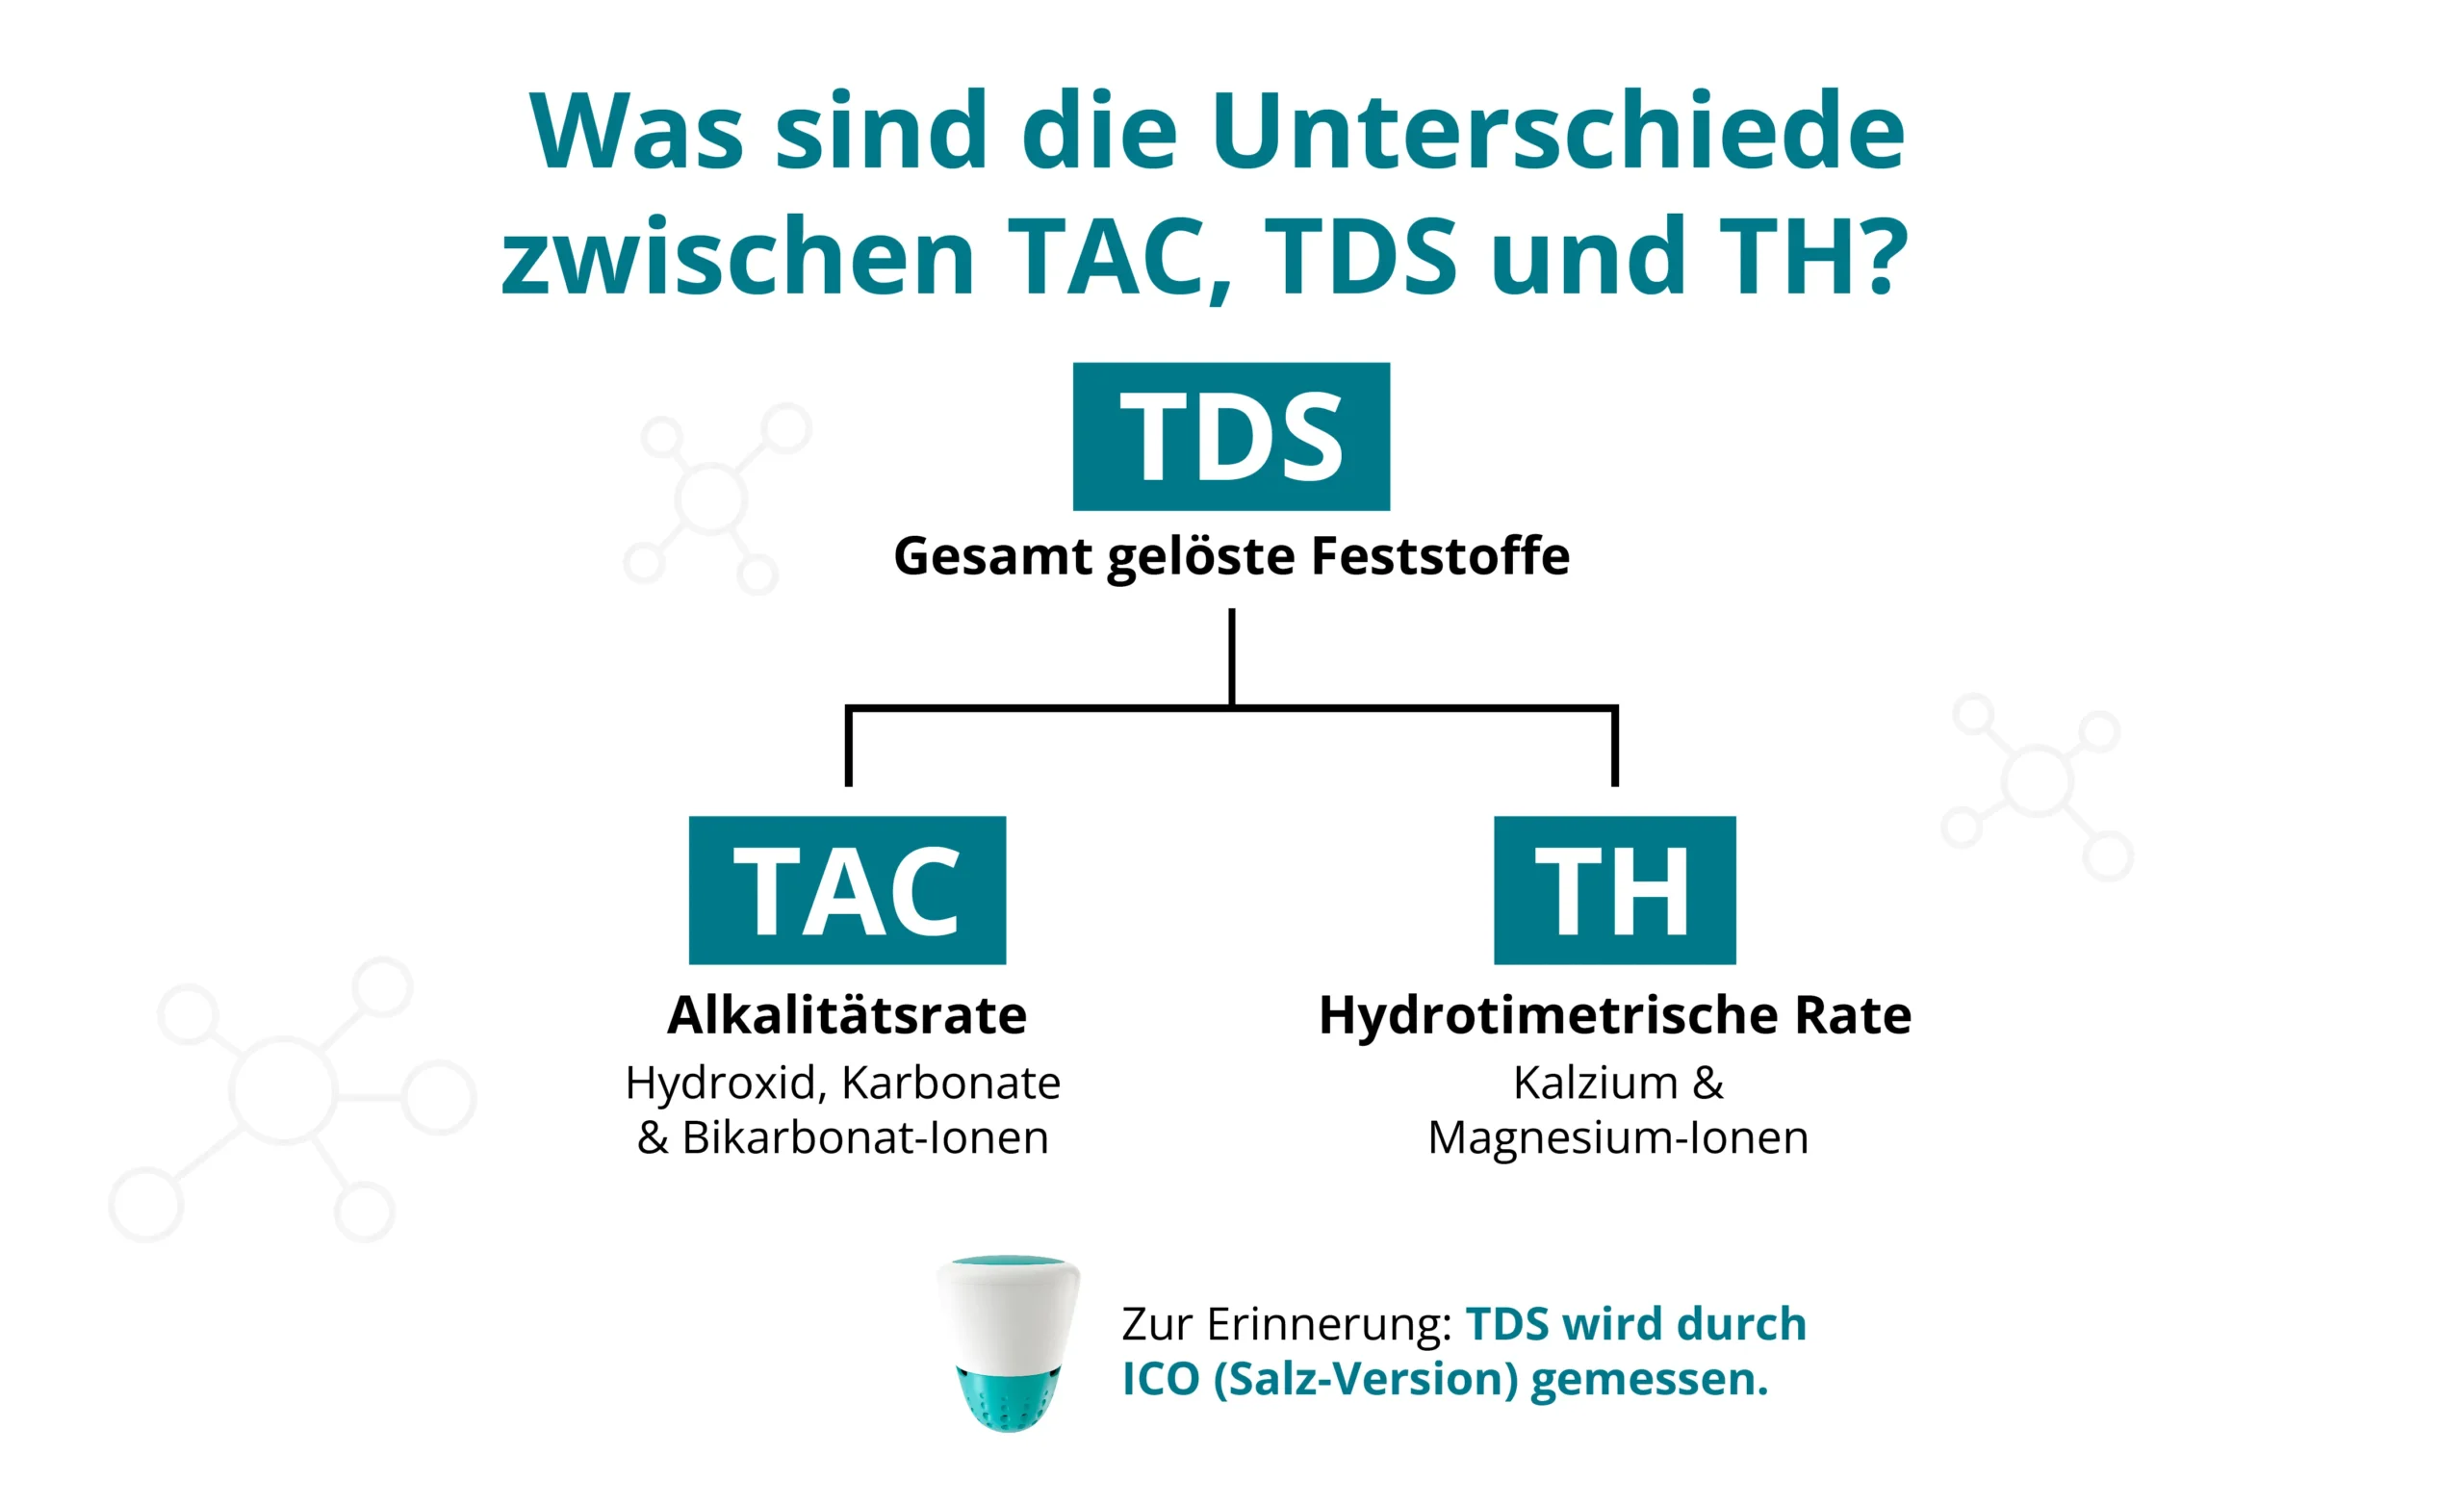 ICO misst TDS, das zuverlässiger ist als TH- oder TAC-Messungen, die wiederum nur bestimmte Ionen umfassen. Diese Abbildung zeigt die Unterschiede zwischen diesen drei Parametern, die oft verwechselt werden. 